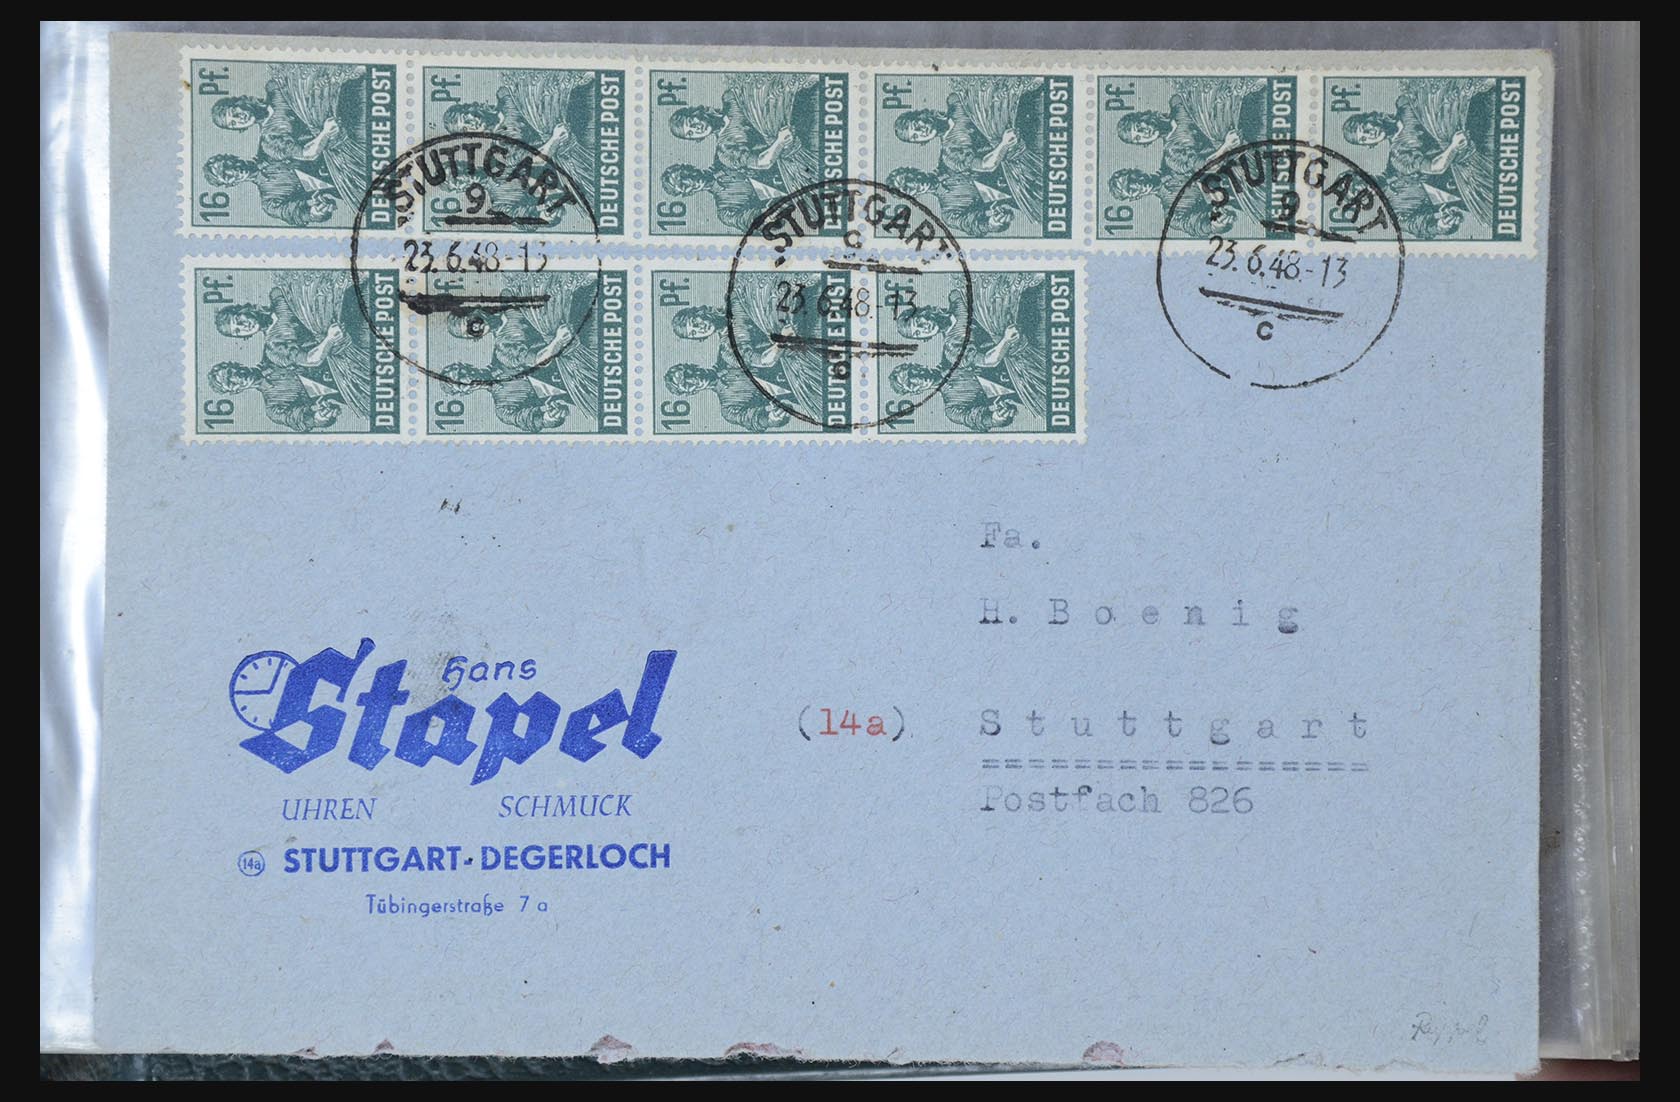 31581 033 - 31581 Duitsland brieven en FDC's 1945-1981.